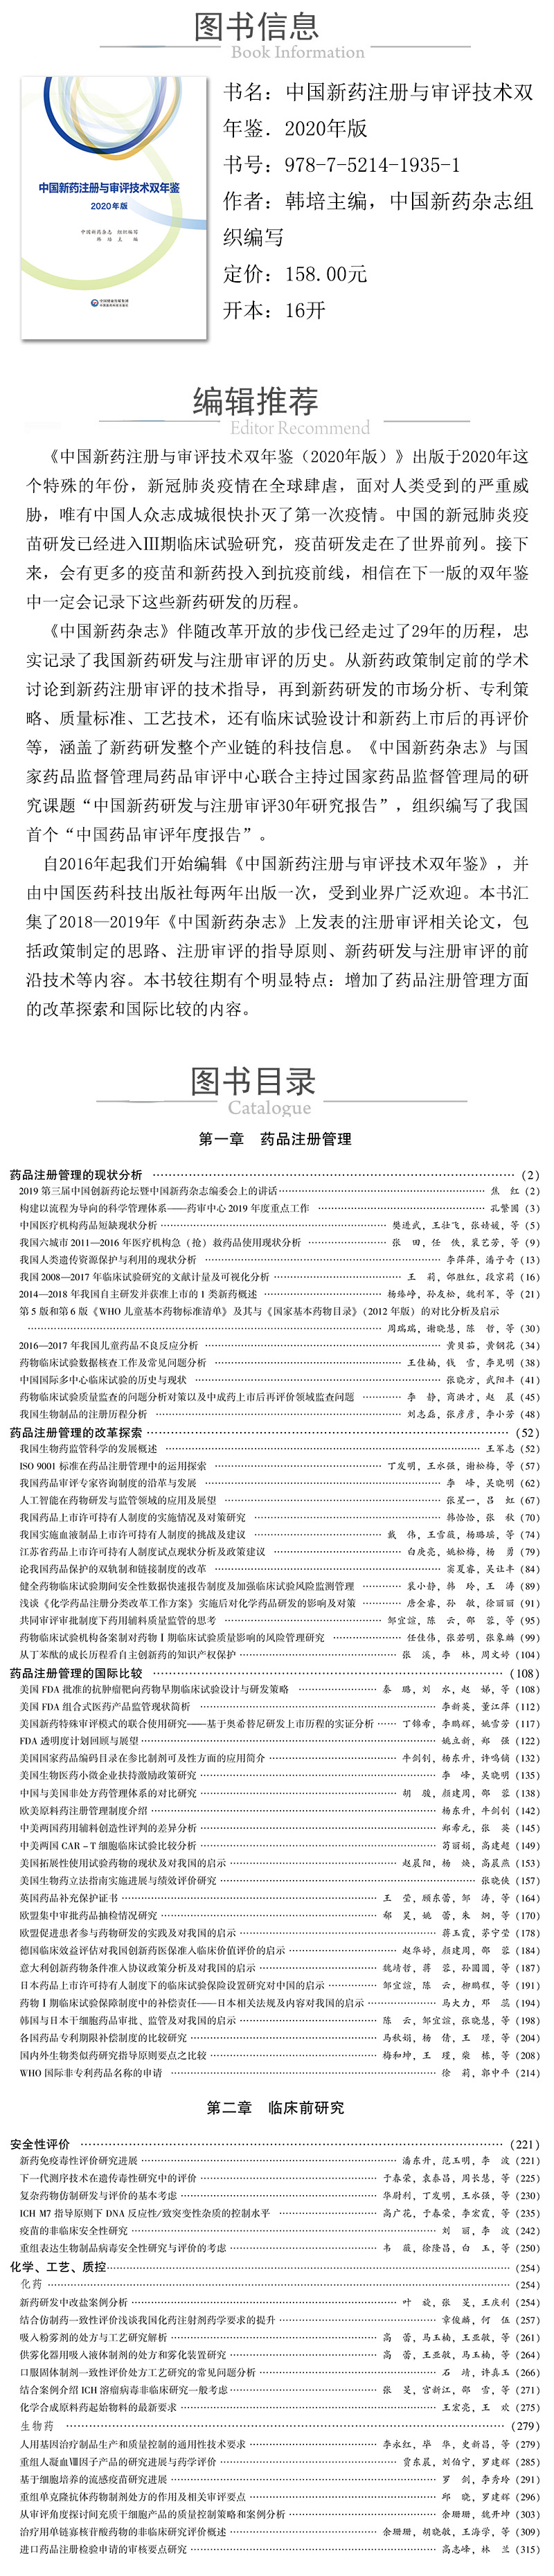 978-7-5214-1935-1---中国新药注册与审评技术双年鉴．2020年版 XQ.jpg